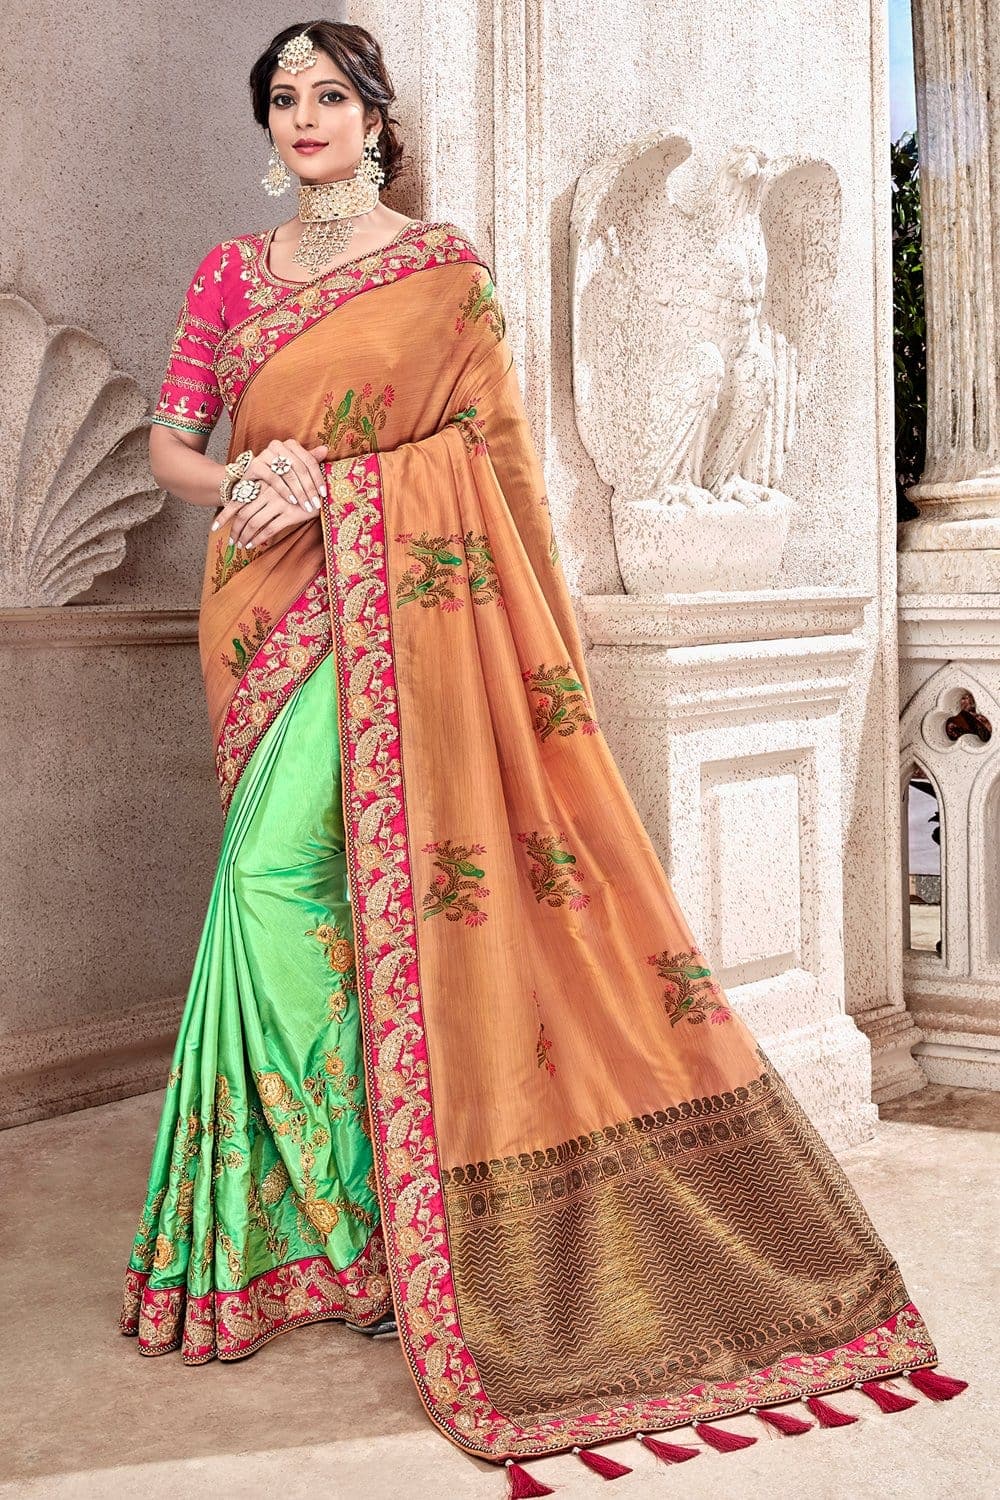 Buy Orange,green banarasi saree online at best price - Karagiri